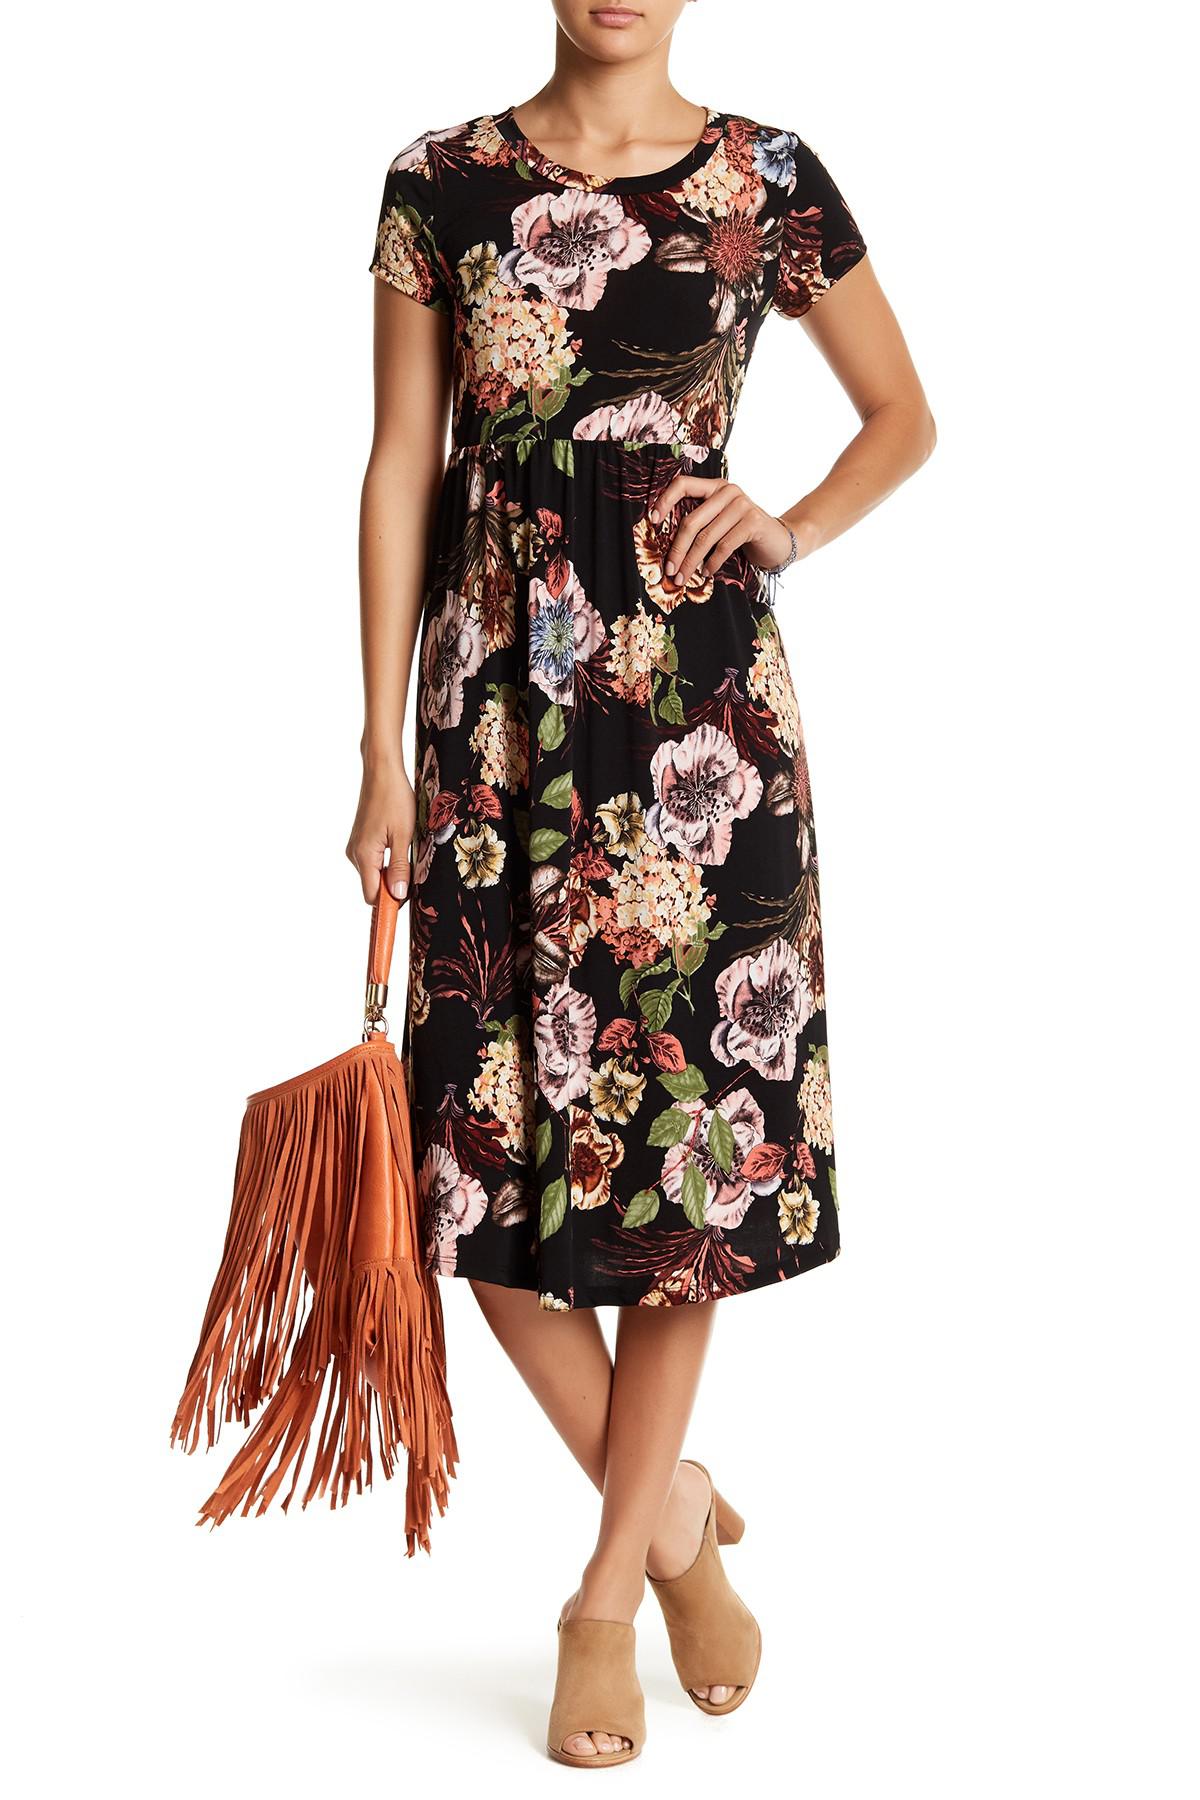 Lyst - West Kei Short Sleeve Floral Print Midi Dress in Black